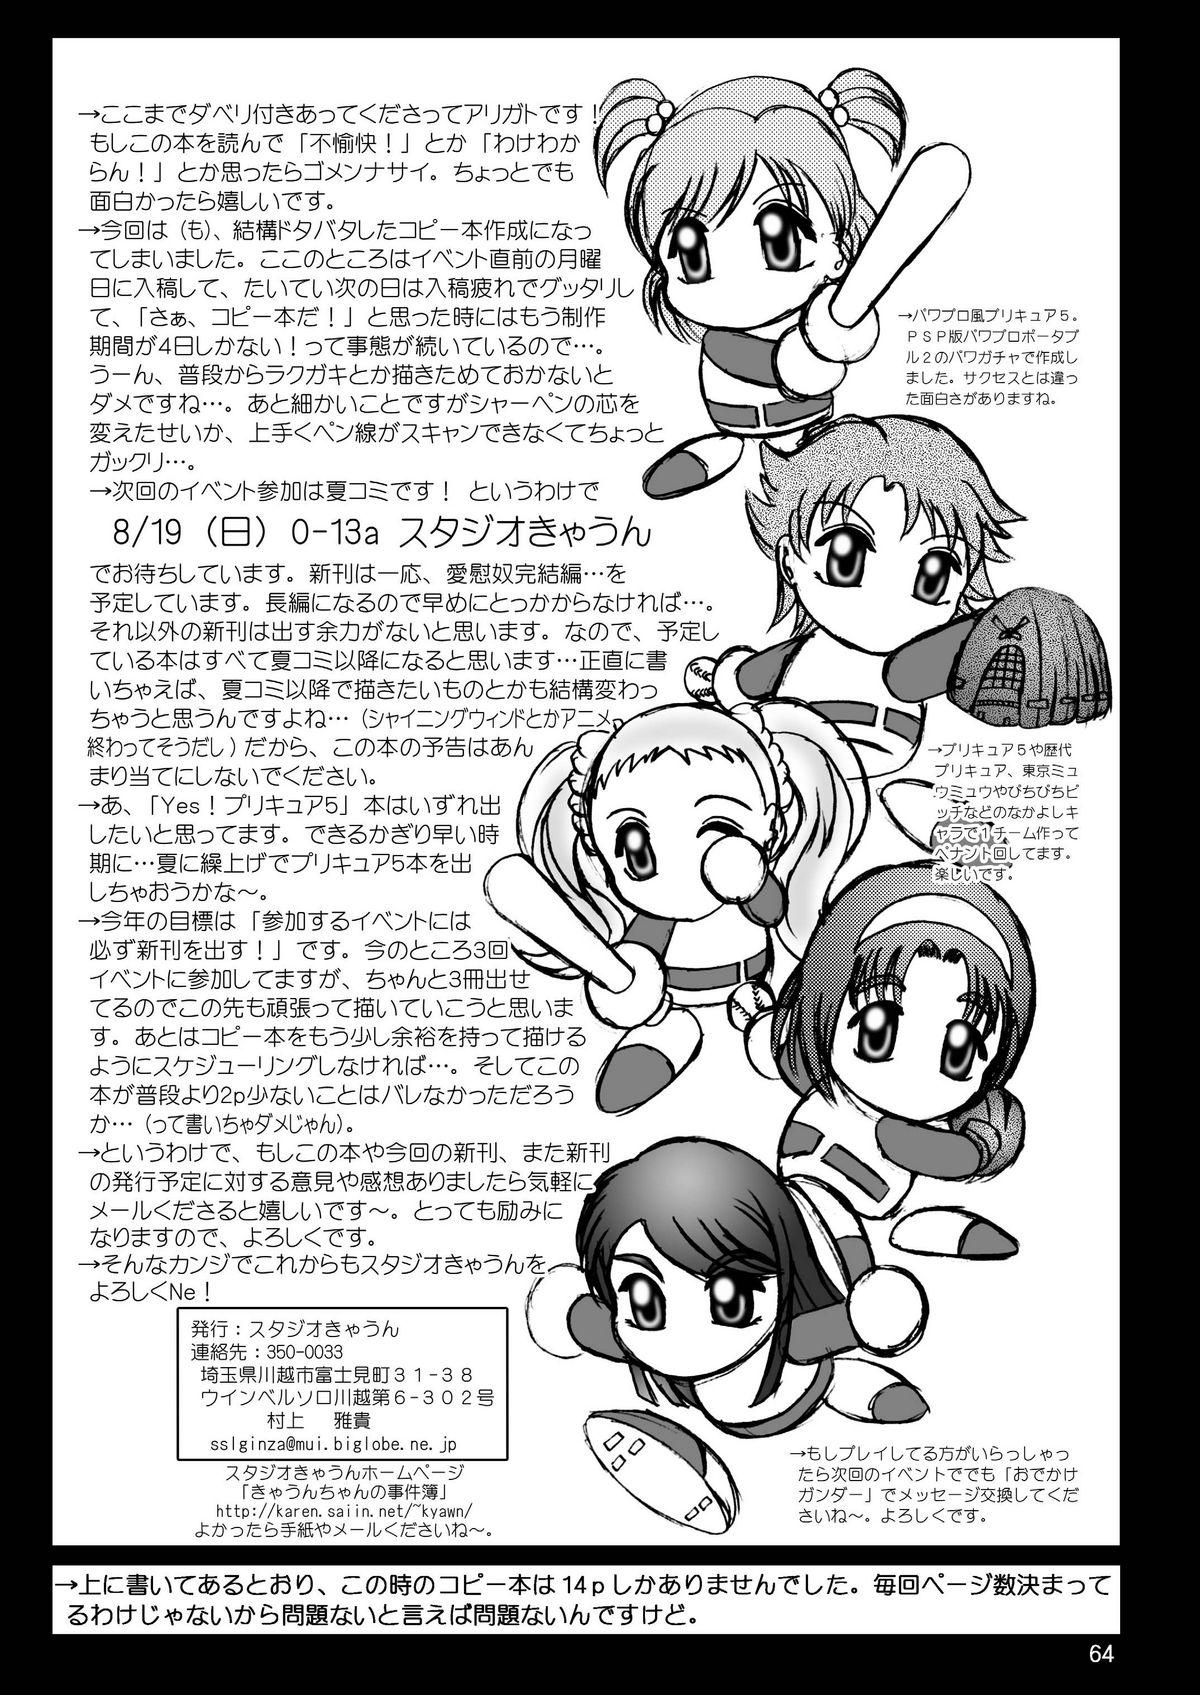 スタジオきゃうんコピー本総集編2007年版 64